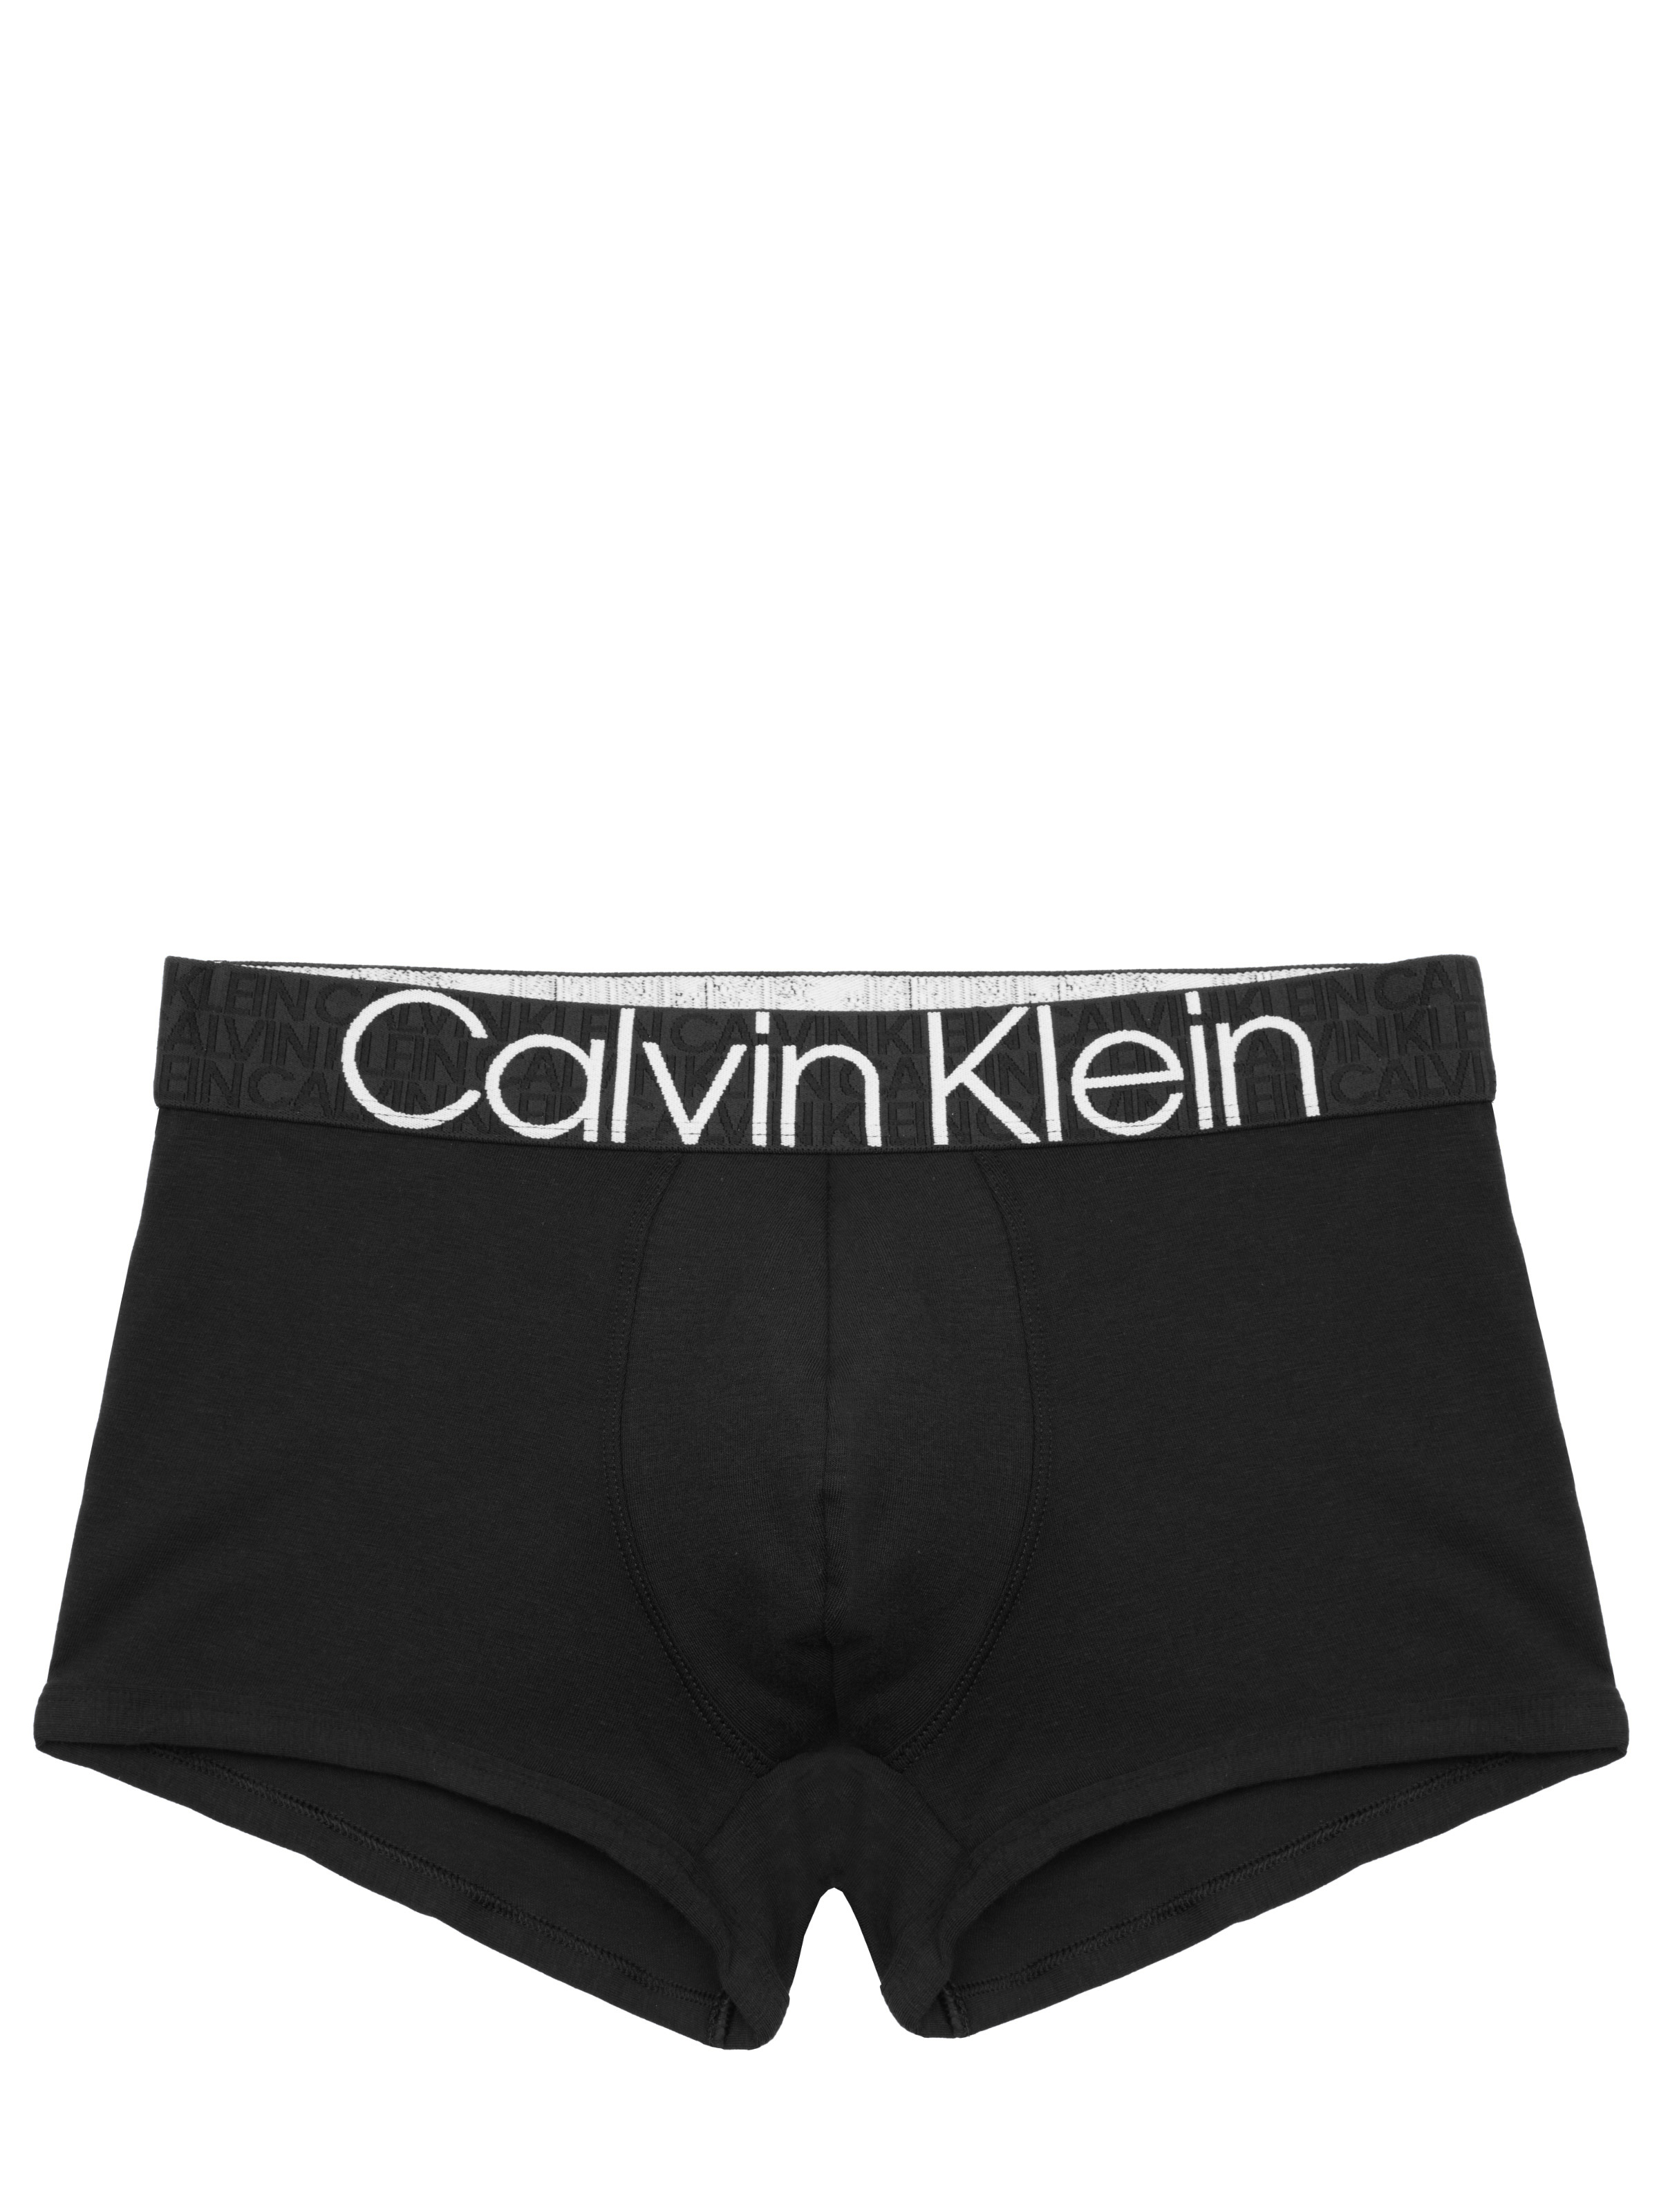 Calvin Klein Underwear Black on SALE